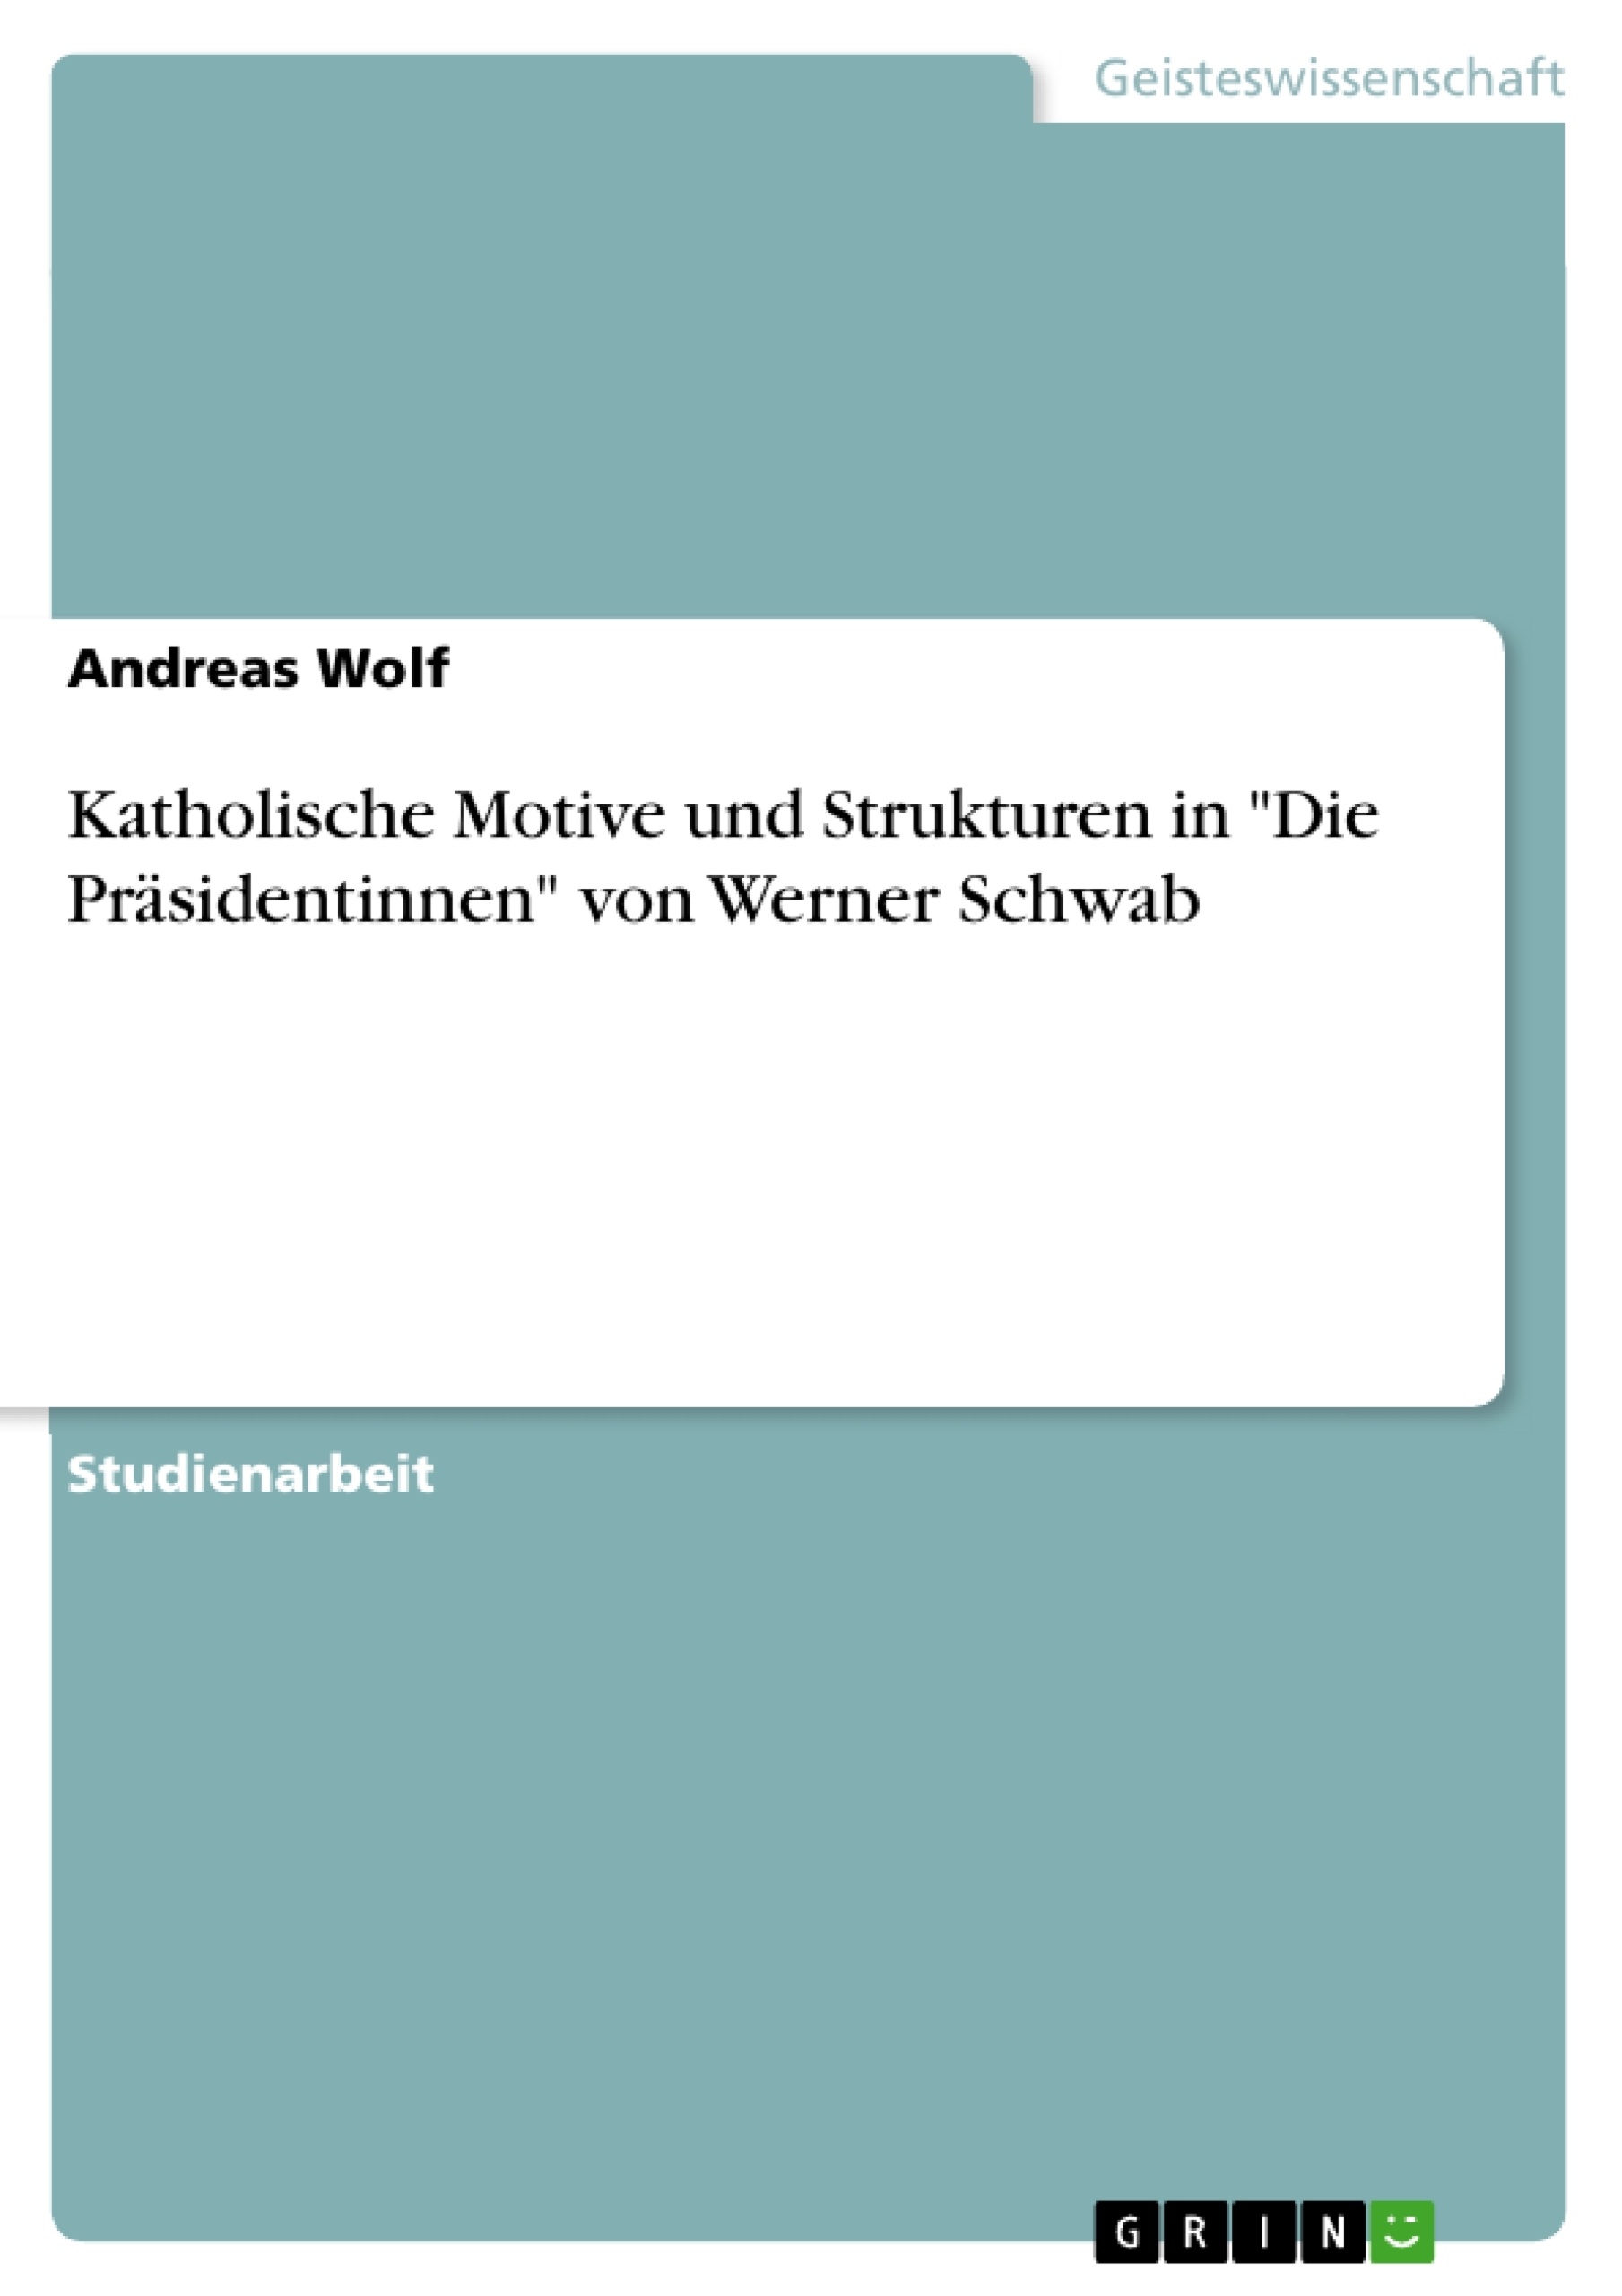 Title: Katholische Motive und Strukturen in "Die Präsidentinnen" von Werner Schwab